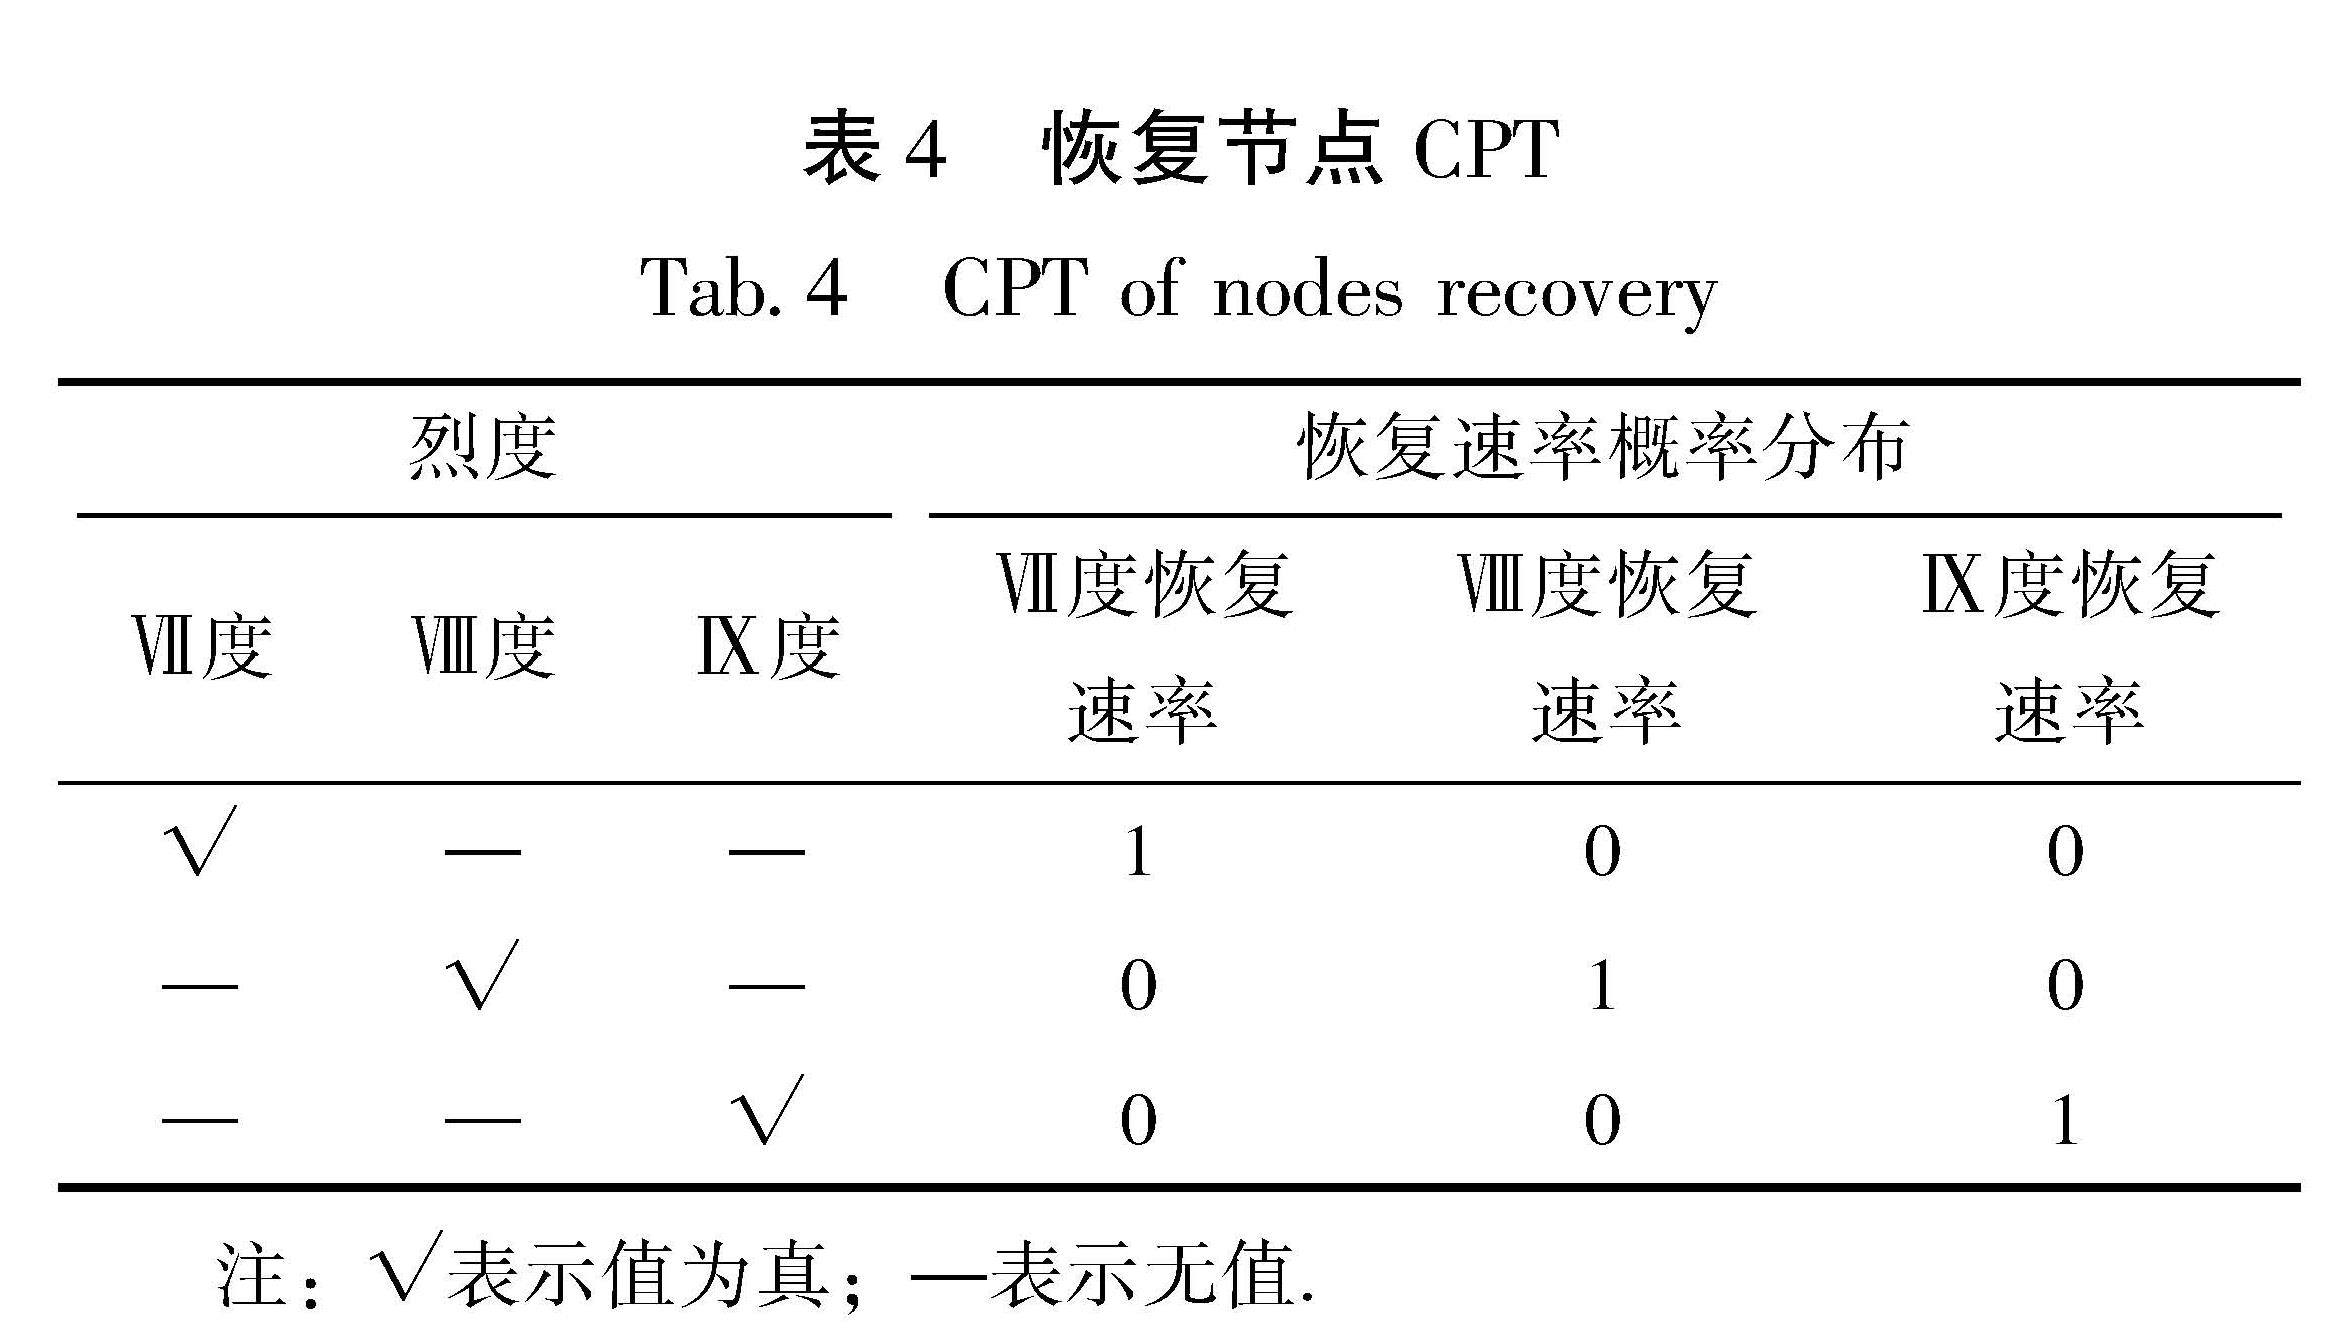 表4 恢复节点CPT<br/>Tab.4 CPT of nodes recovery